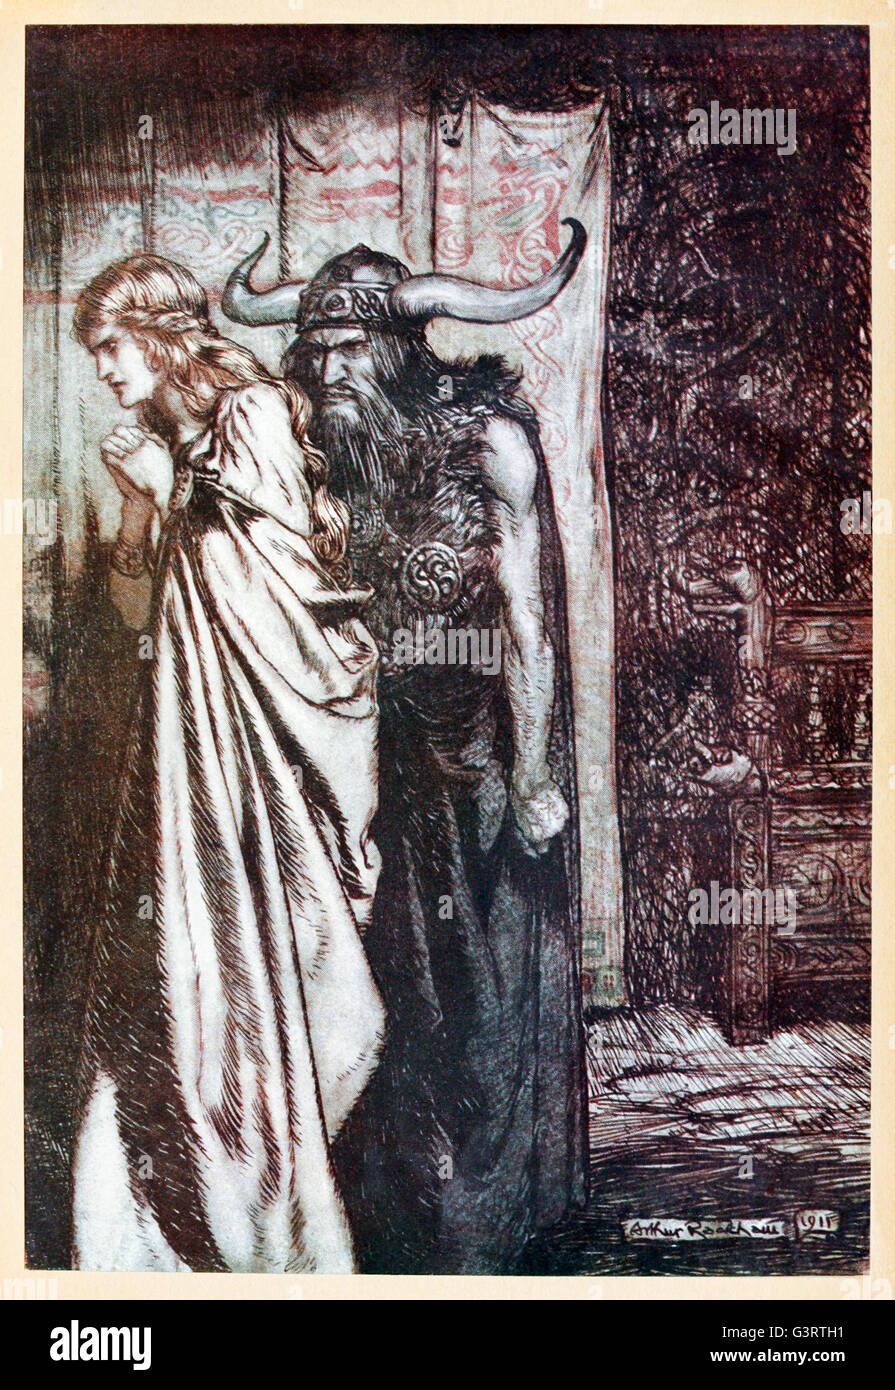 "O Frau verraten, ich werde dein Vertrauen getäuscht rächen" "von"Siegfried & The Twilight of the Gods"illustriert von Arthur Rackham (1867-1939). Siehe Beschreibung für mehr Informationen. Stockfoto